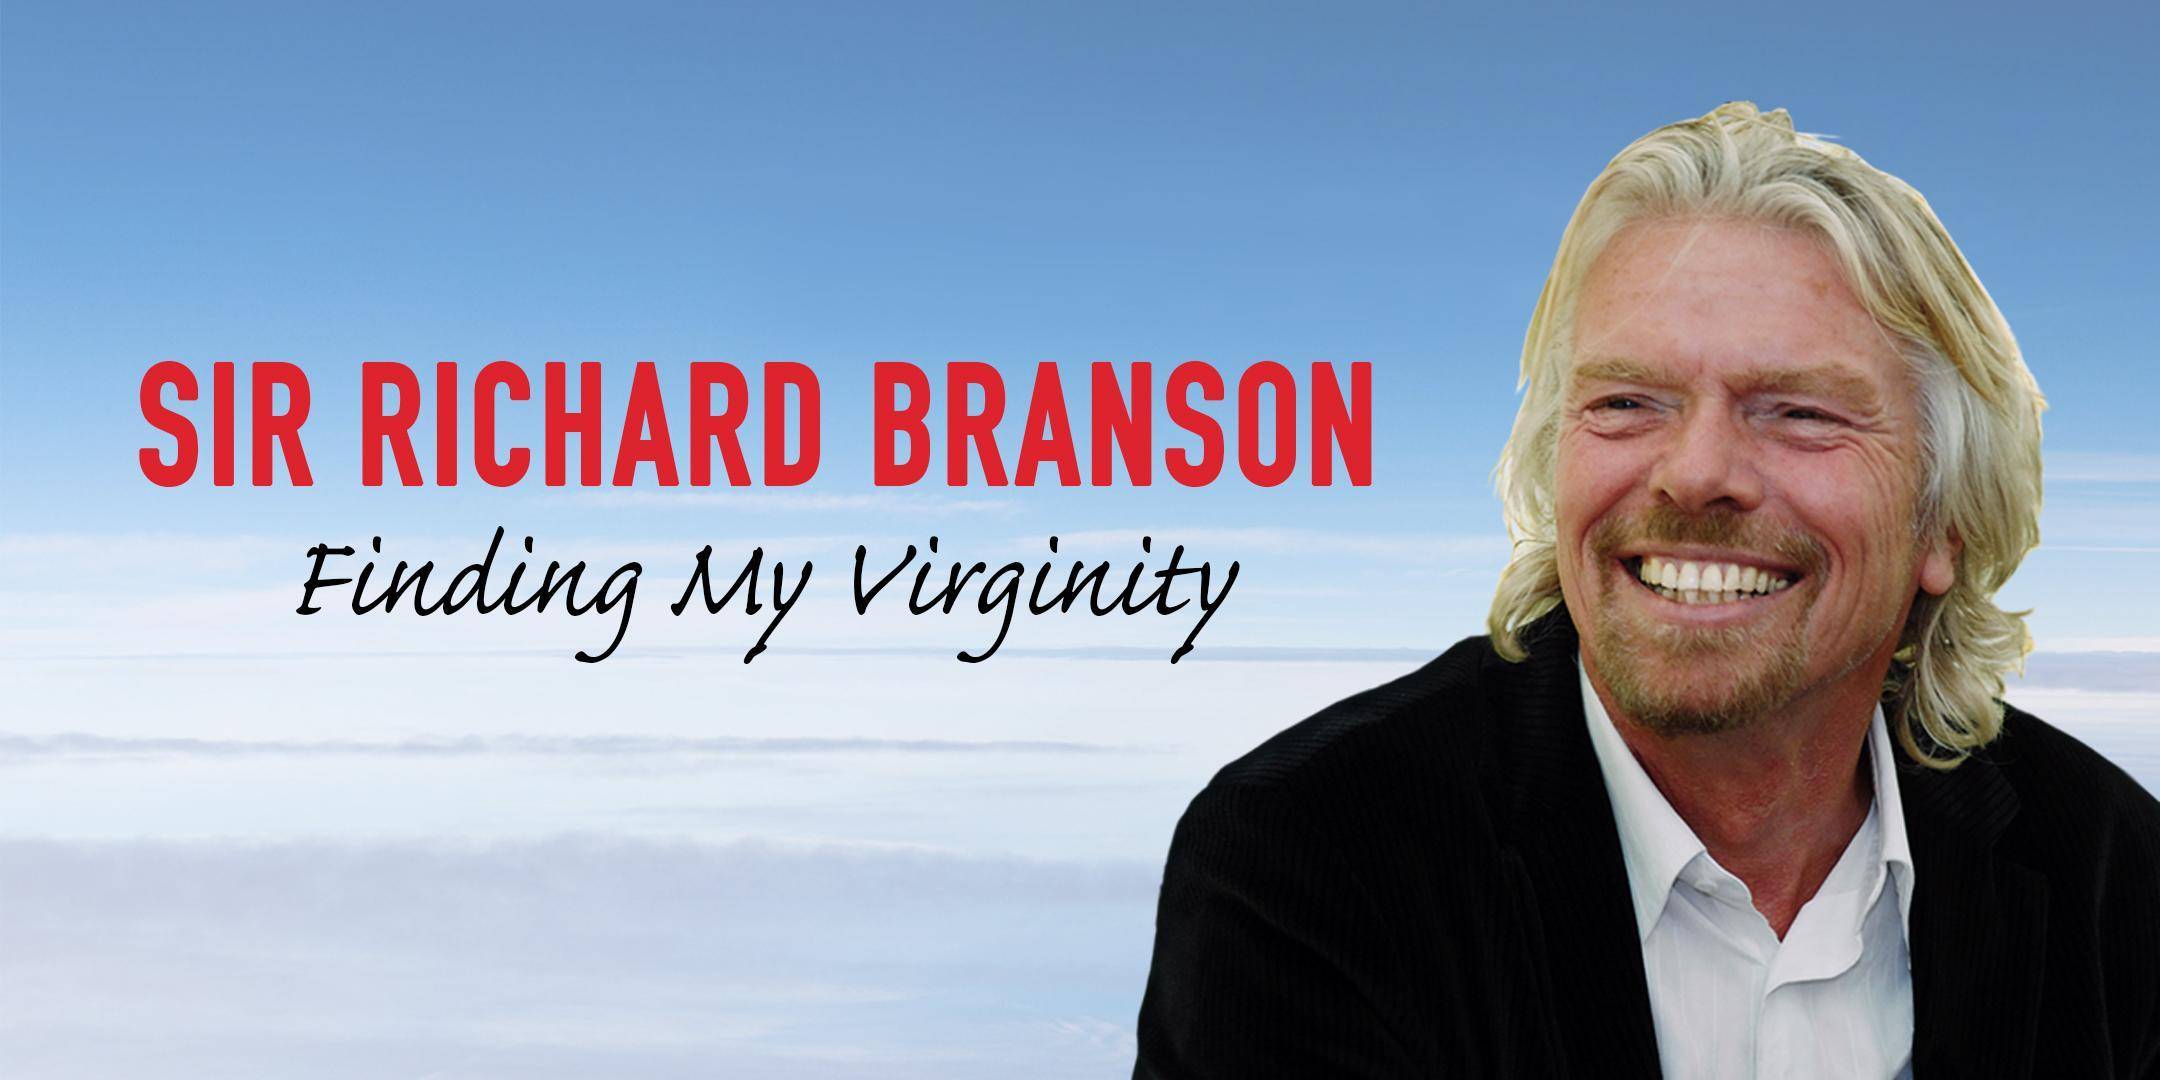 Ричард брэнсон — биография, личная жизнь, фото, новости, «к черту все! берись и делай», книги 2022 - 24сми